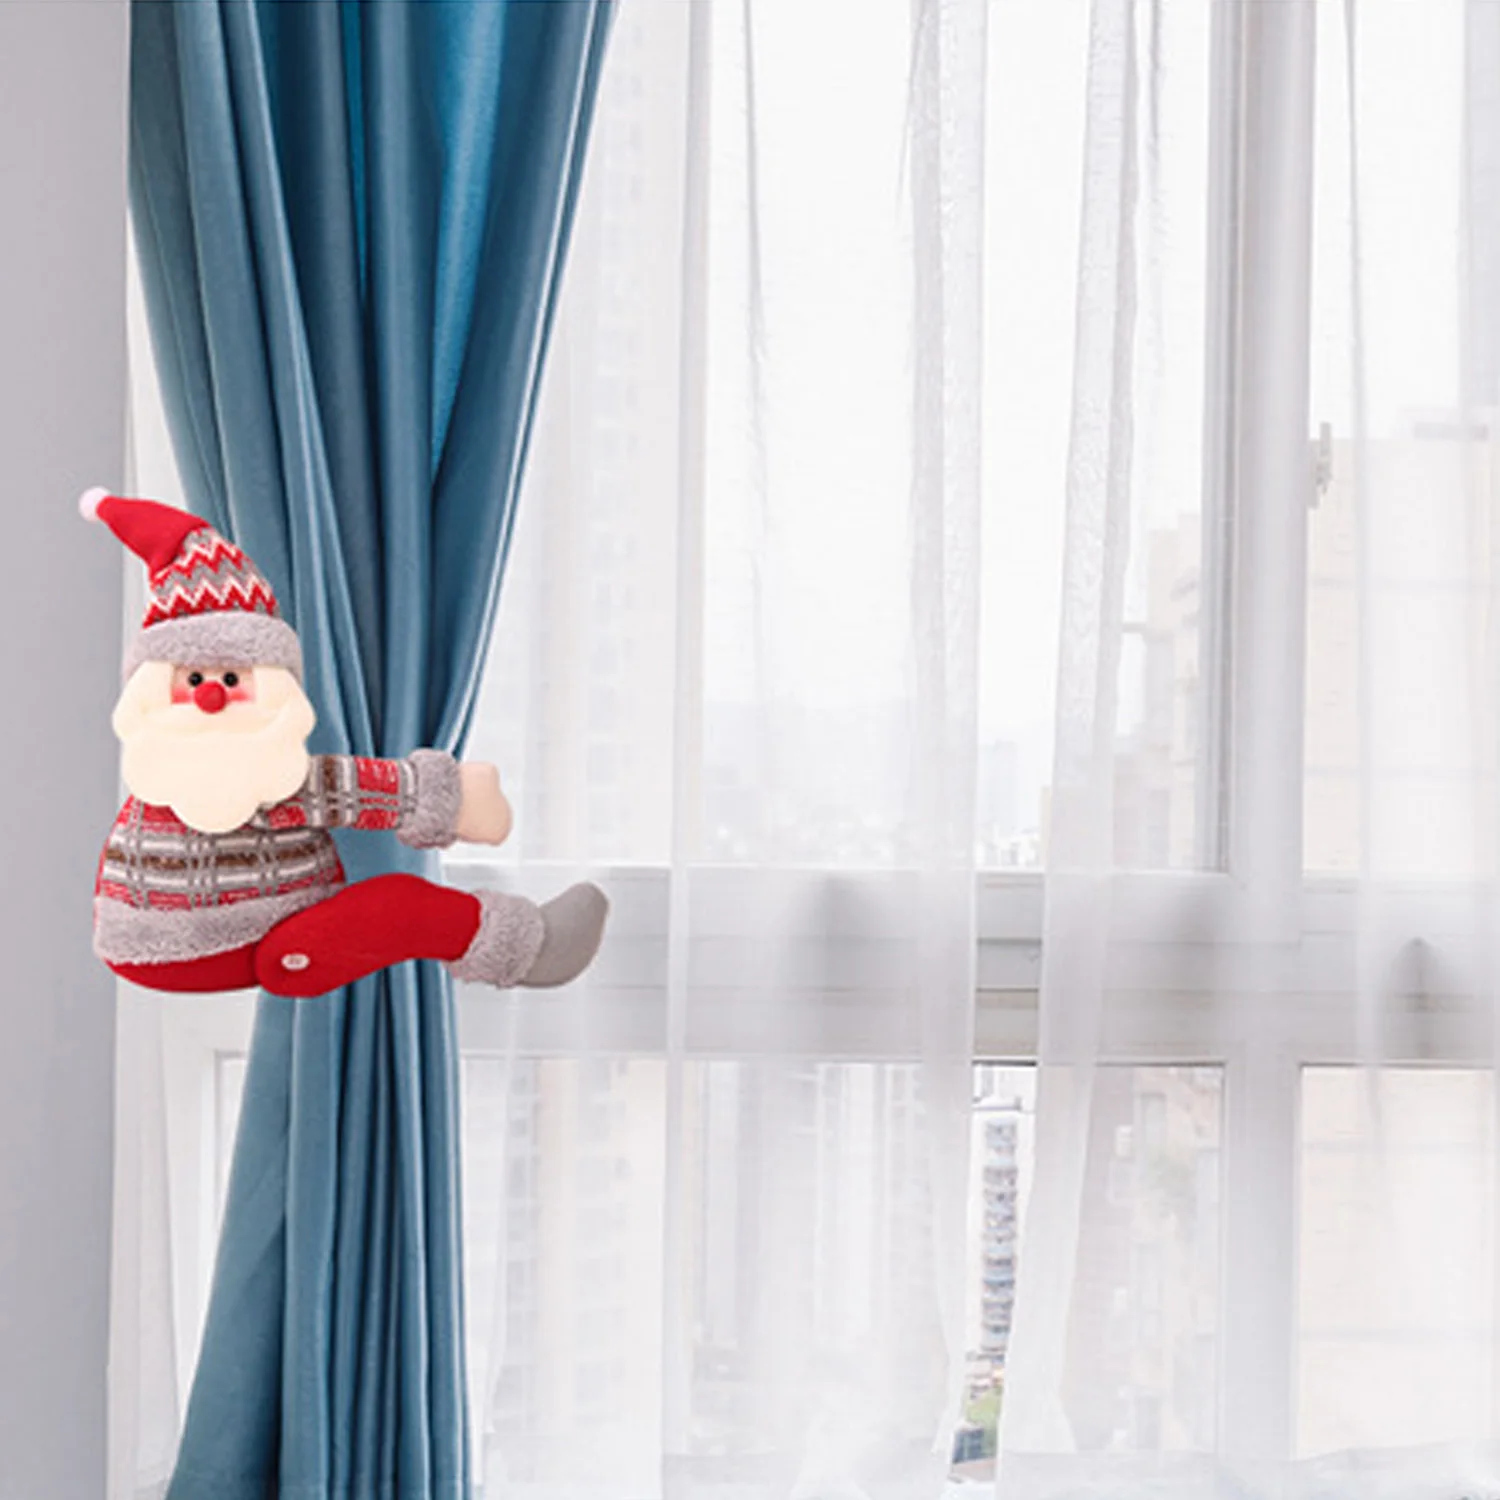 Милый Забавный Рождественский мультфильм Санта-Клаус Снеговик Лось Куклы Игрушки Подарки Магнитный кристаллик для занавесок окно рождественские безделушки игрушка подарок Декор поставки